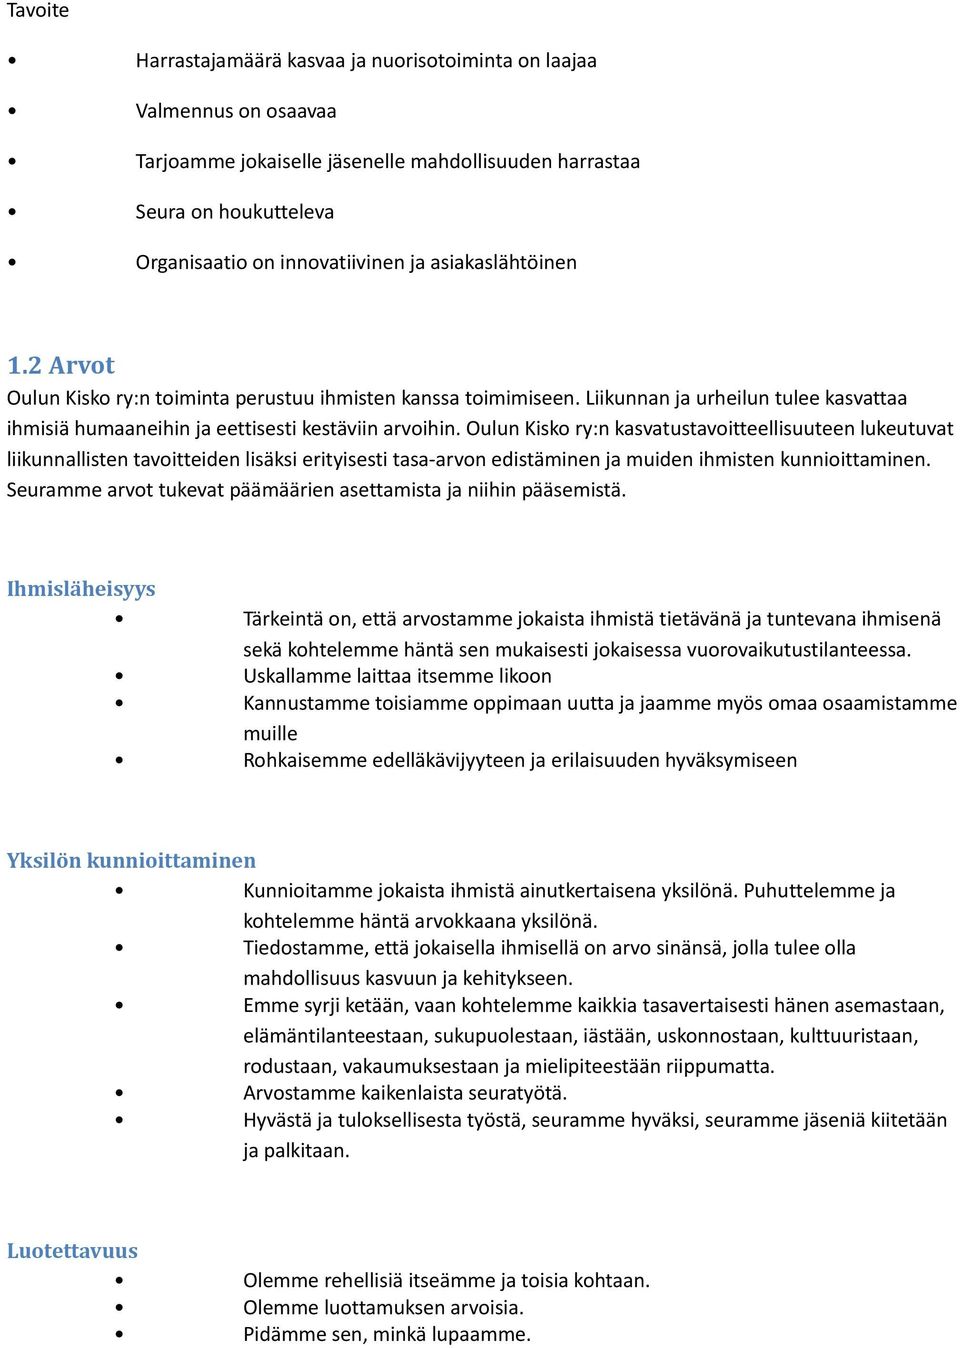 Oulun Kisko ry:n kasvatustavoitteellisuuteen lukeutuvat liikunnallisten tavoitteiden lisäksi erityisesti tasa-arvon edistäminen ja muiden ihmisten kunnioittaminen.